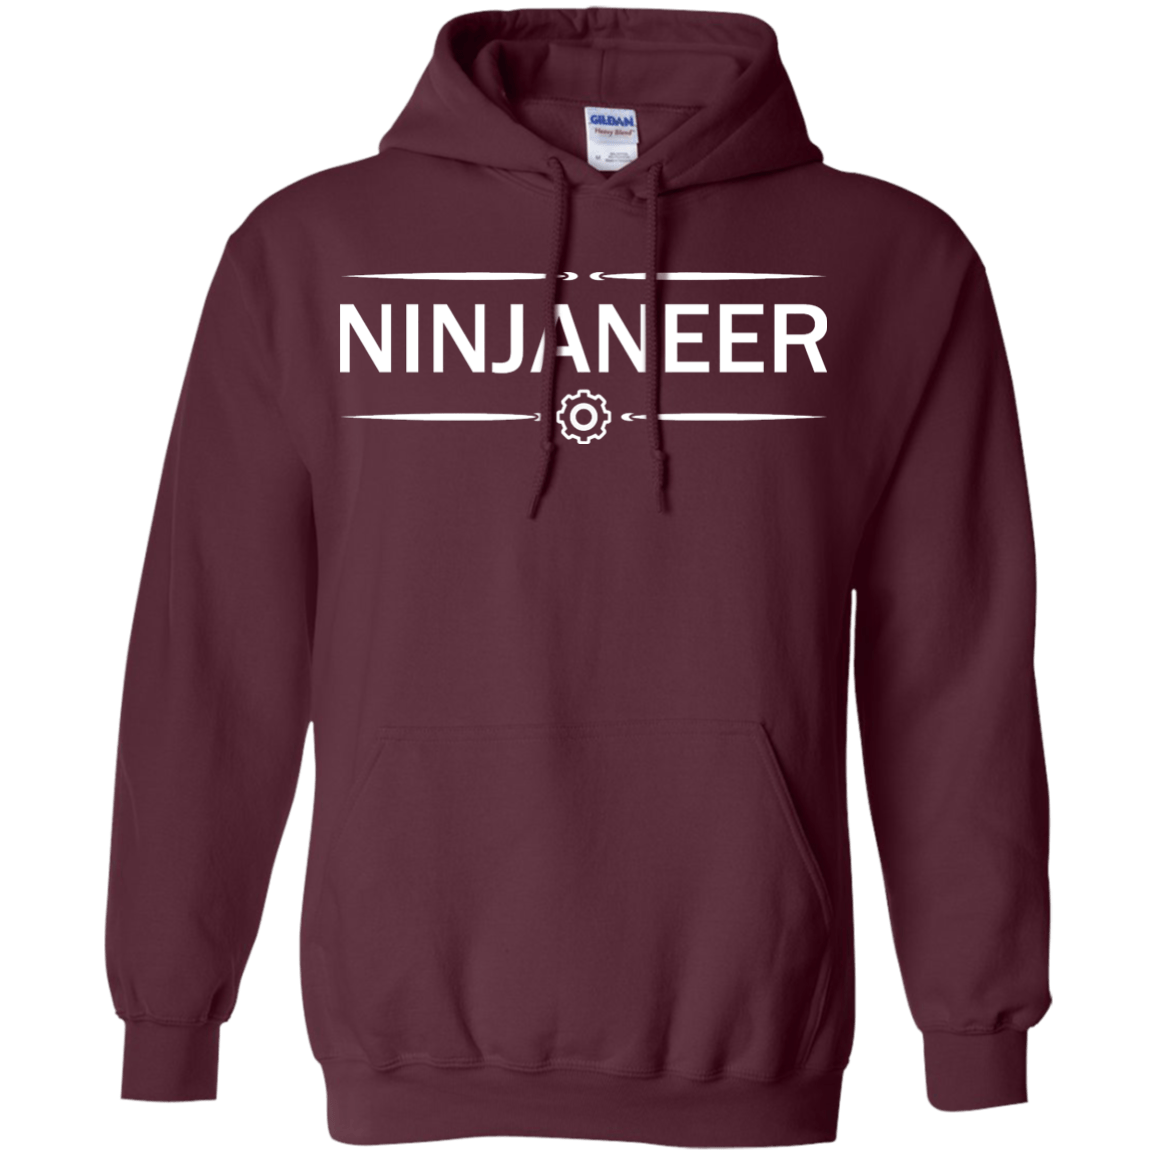 Ninjaneer - Engineering Outfitters